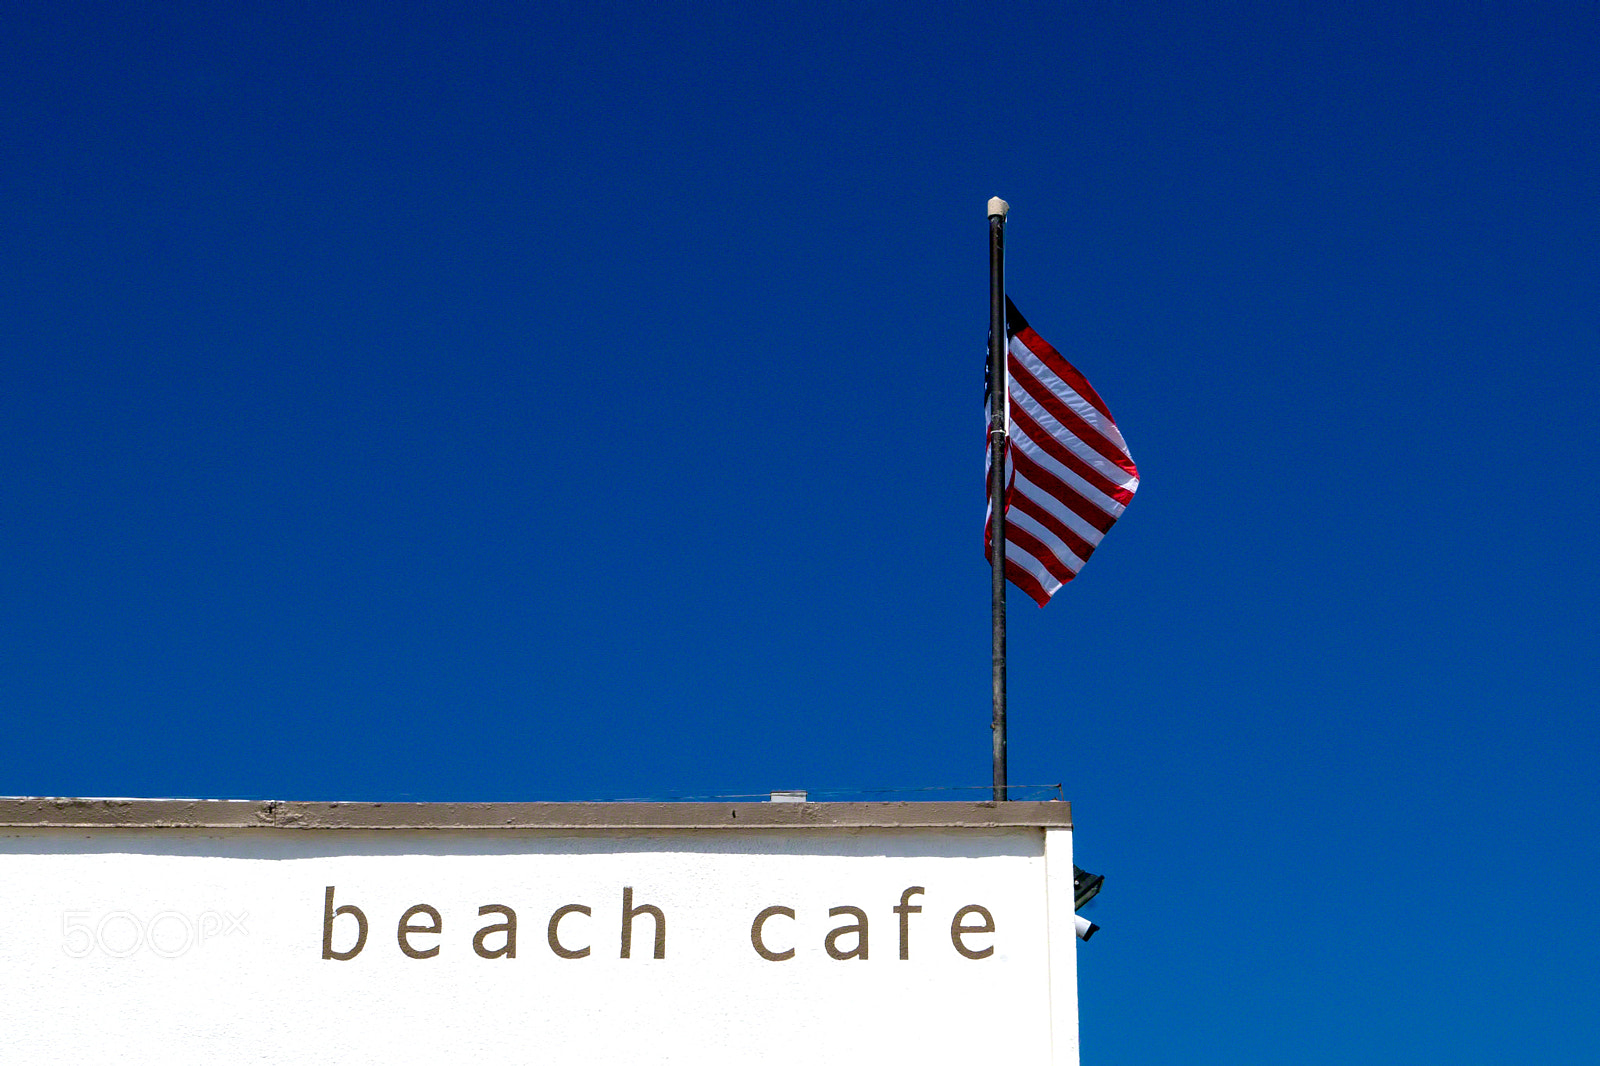 Sony a99 II sample photo. Beach cafe at venice beach, ca photography